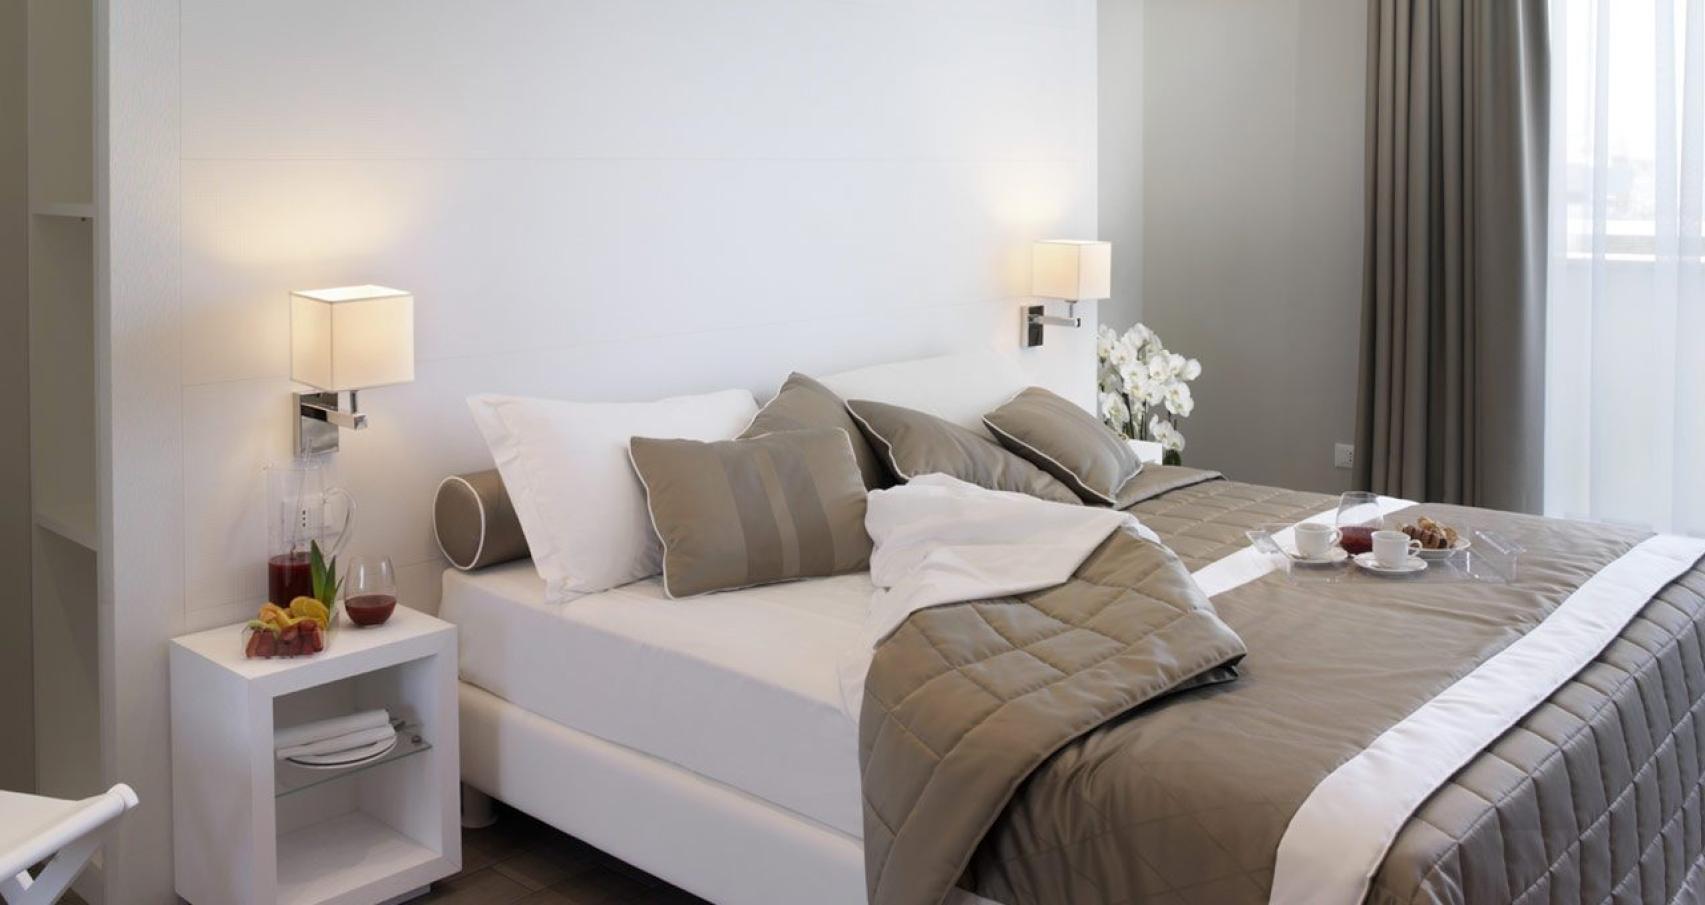 Camera da letto moderna con letto matrimoniale, cuscini grigi e colazione sul letto.